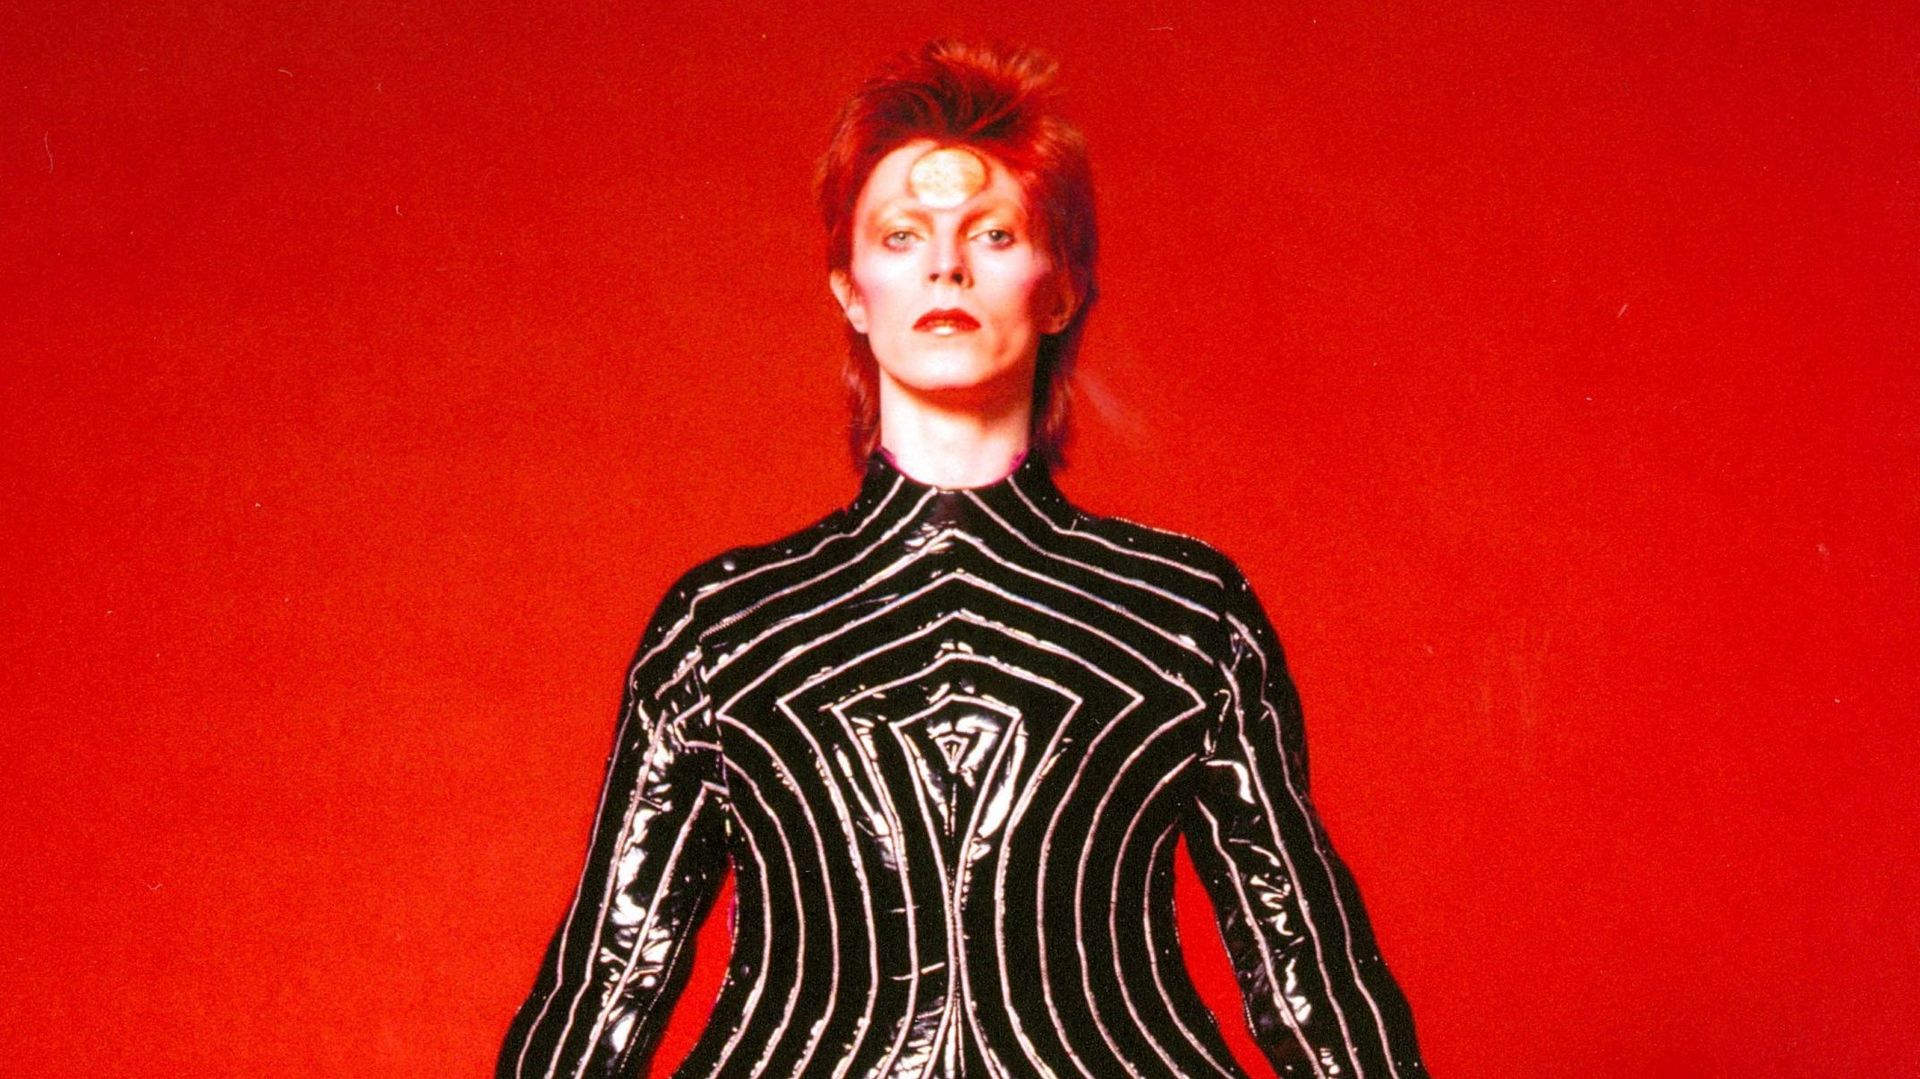 "David Bowie is" va désormais être présentée à l'ACMI de Melbourne, en Australie (16 juillet-1er novembre 2015), puis au Groninger Museum à Groningen, aux Pays-Bas (15 décembre 2015-15 mars 2016)